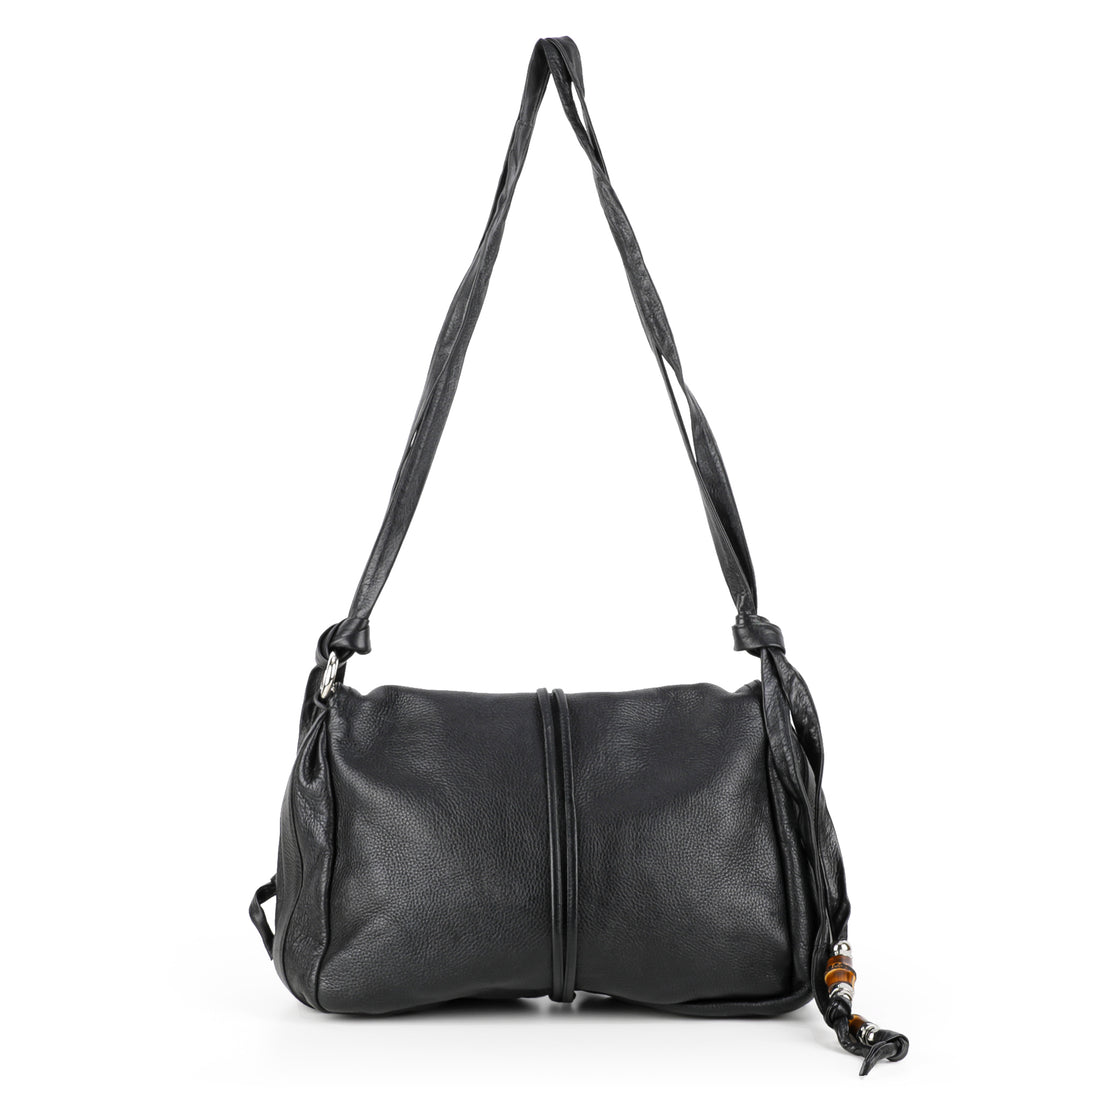 GUCCI Jungle Messenger Bag - Black Leather